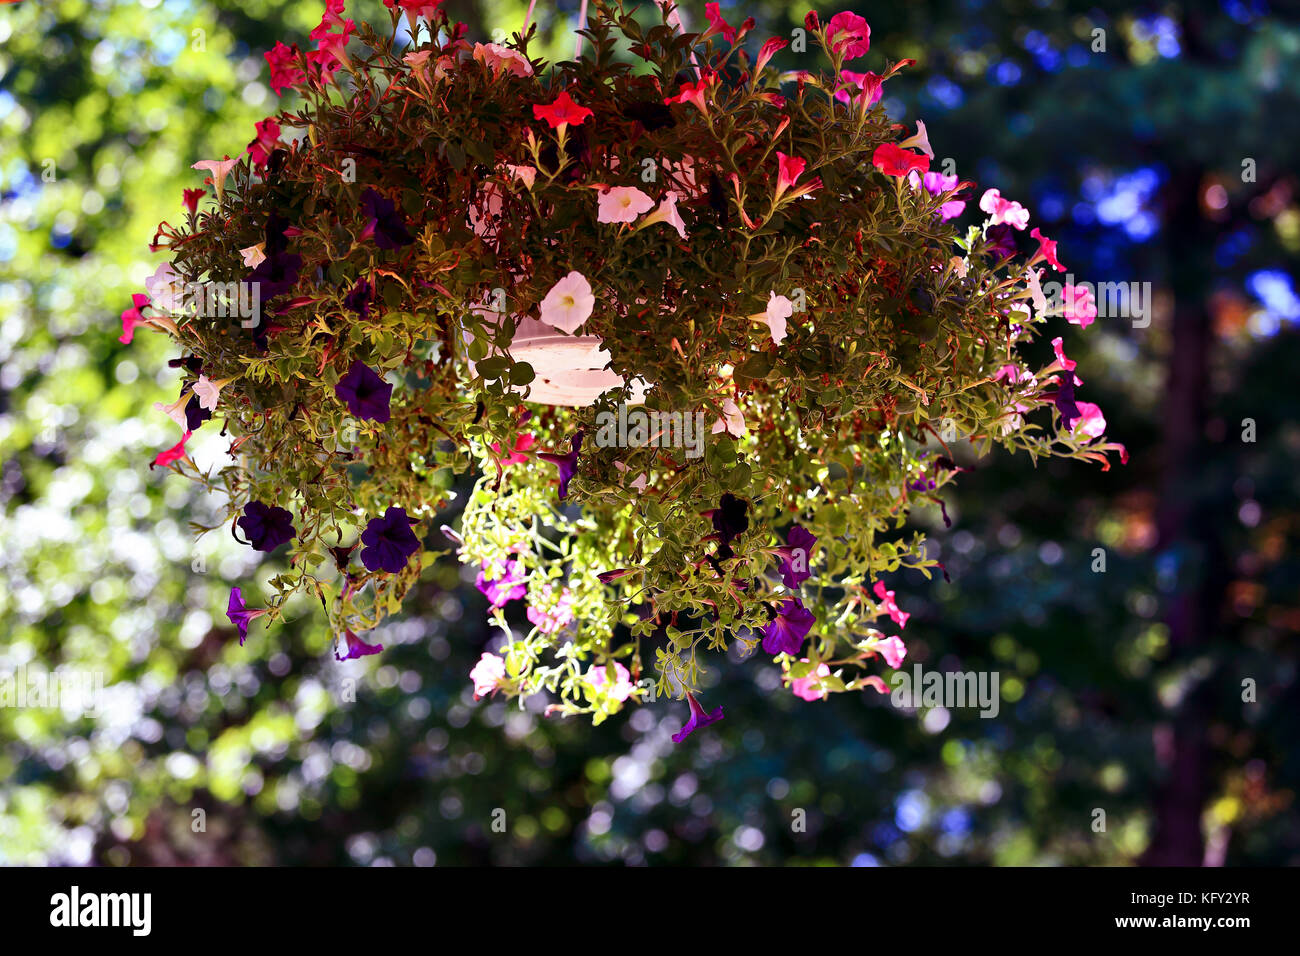 hanging flower basket Stock Photo